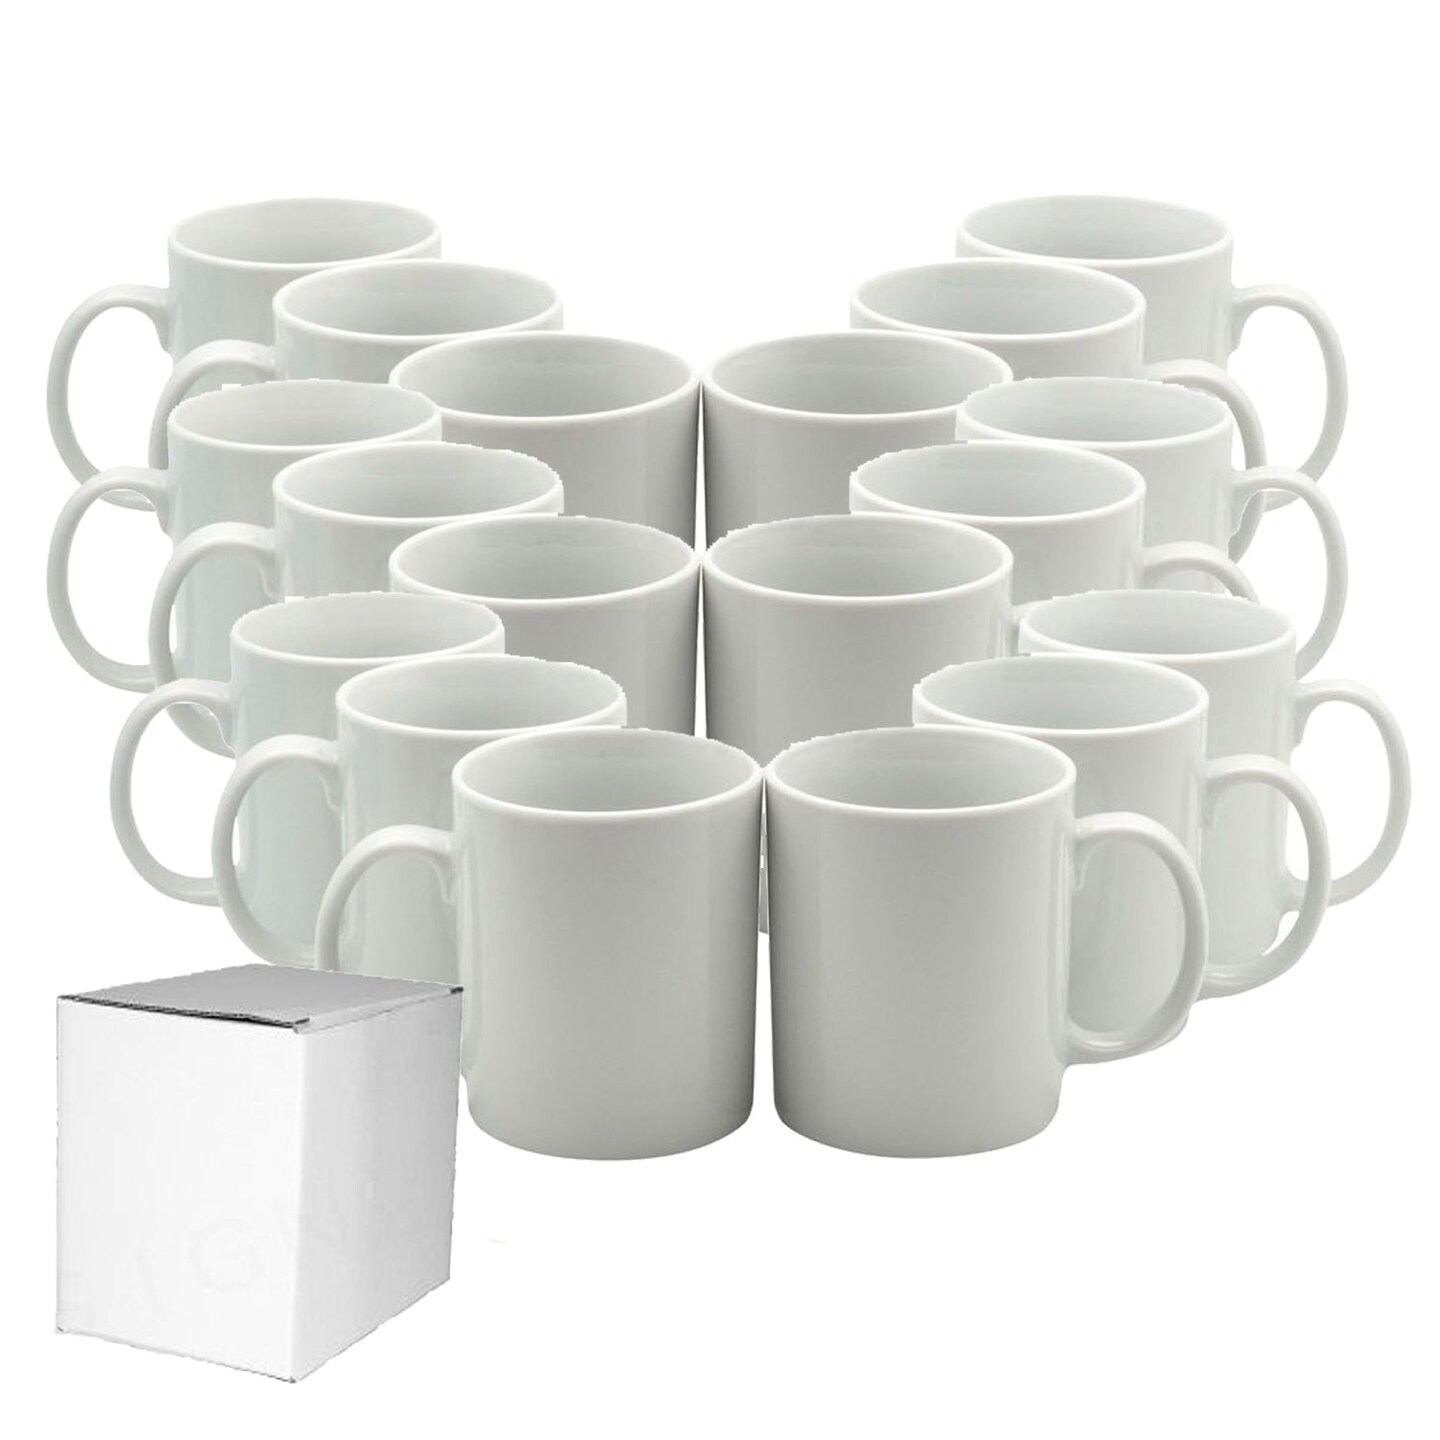 11oz ceramic white sublimation mug with white box –